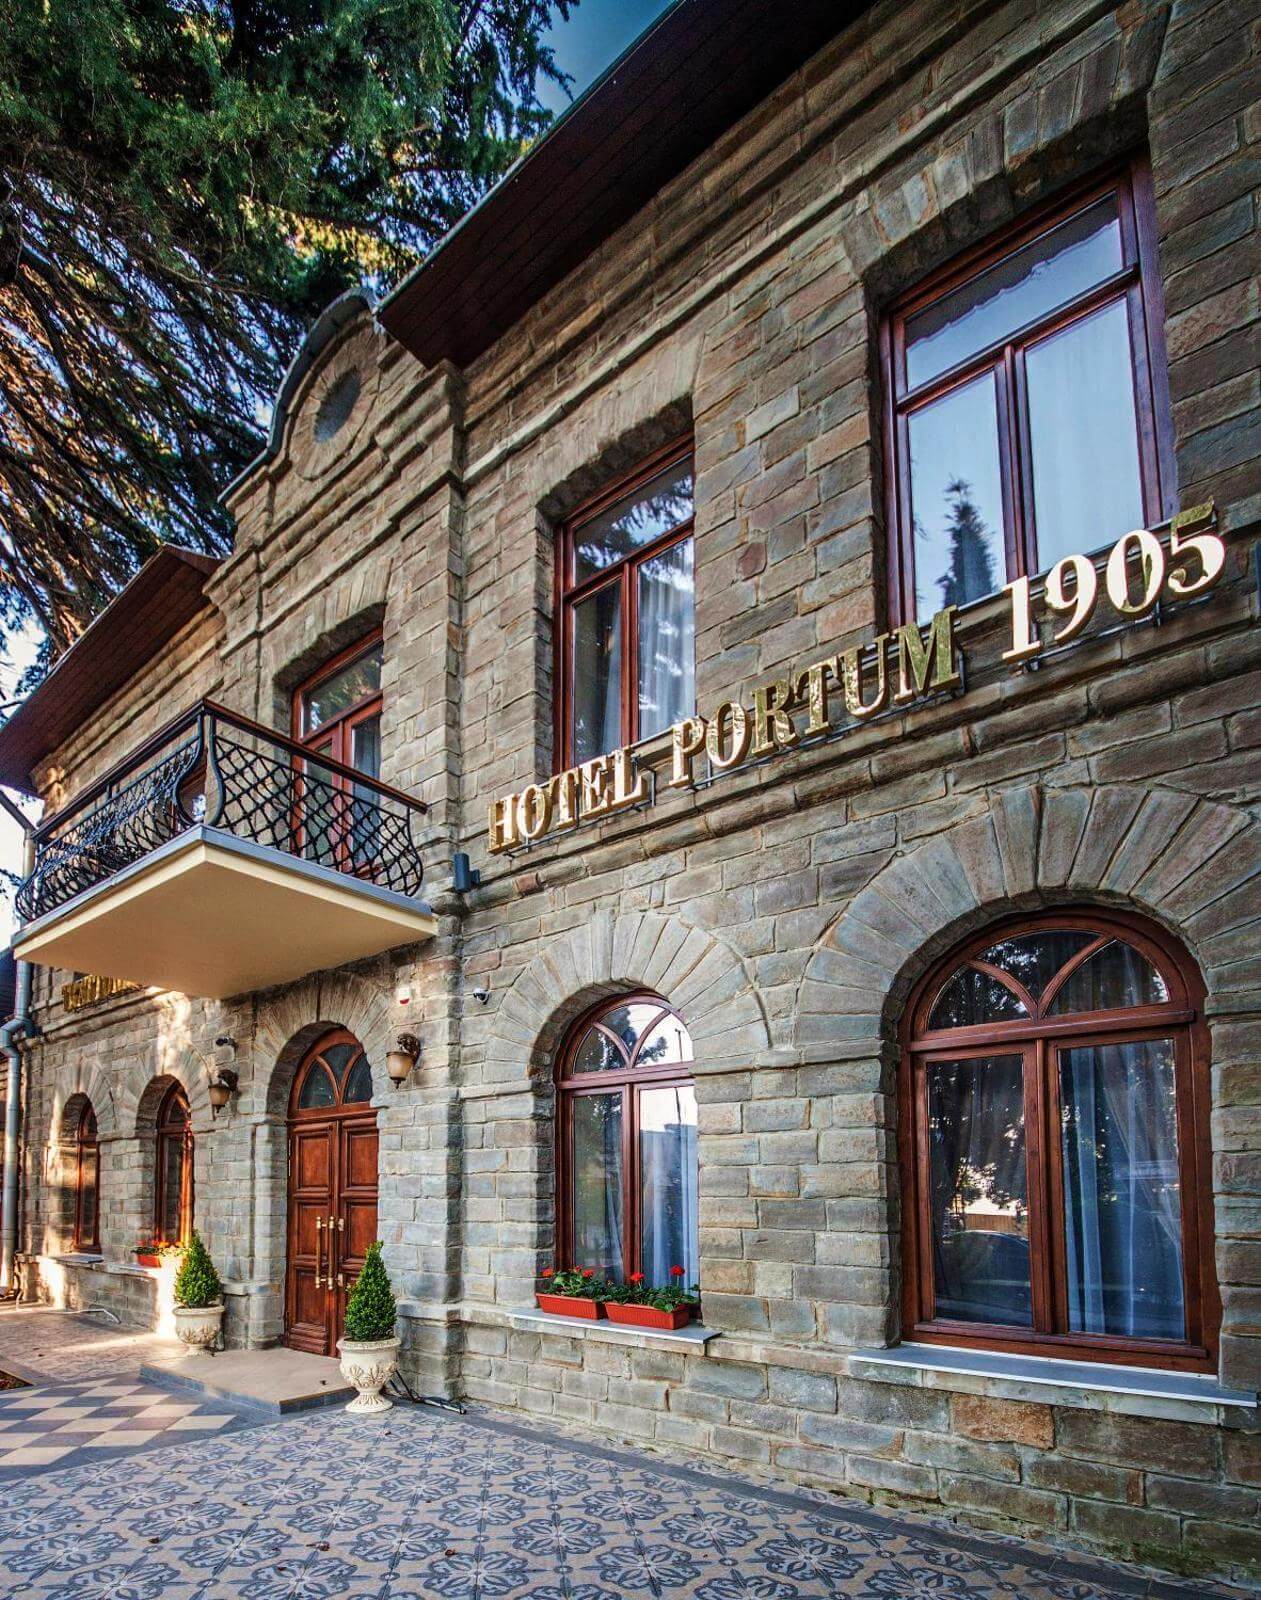 Яркая золотая вывеска с названием отеля: "HOTEL PORTUM 1905".